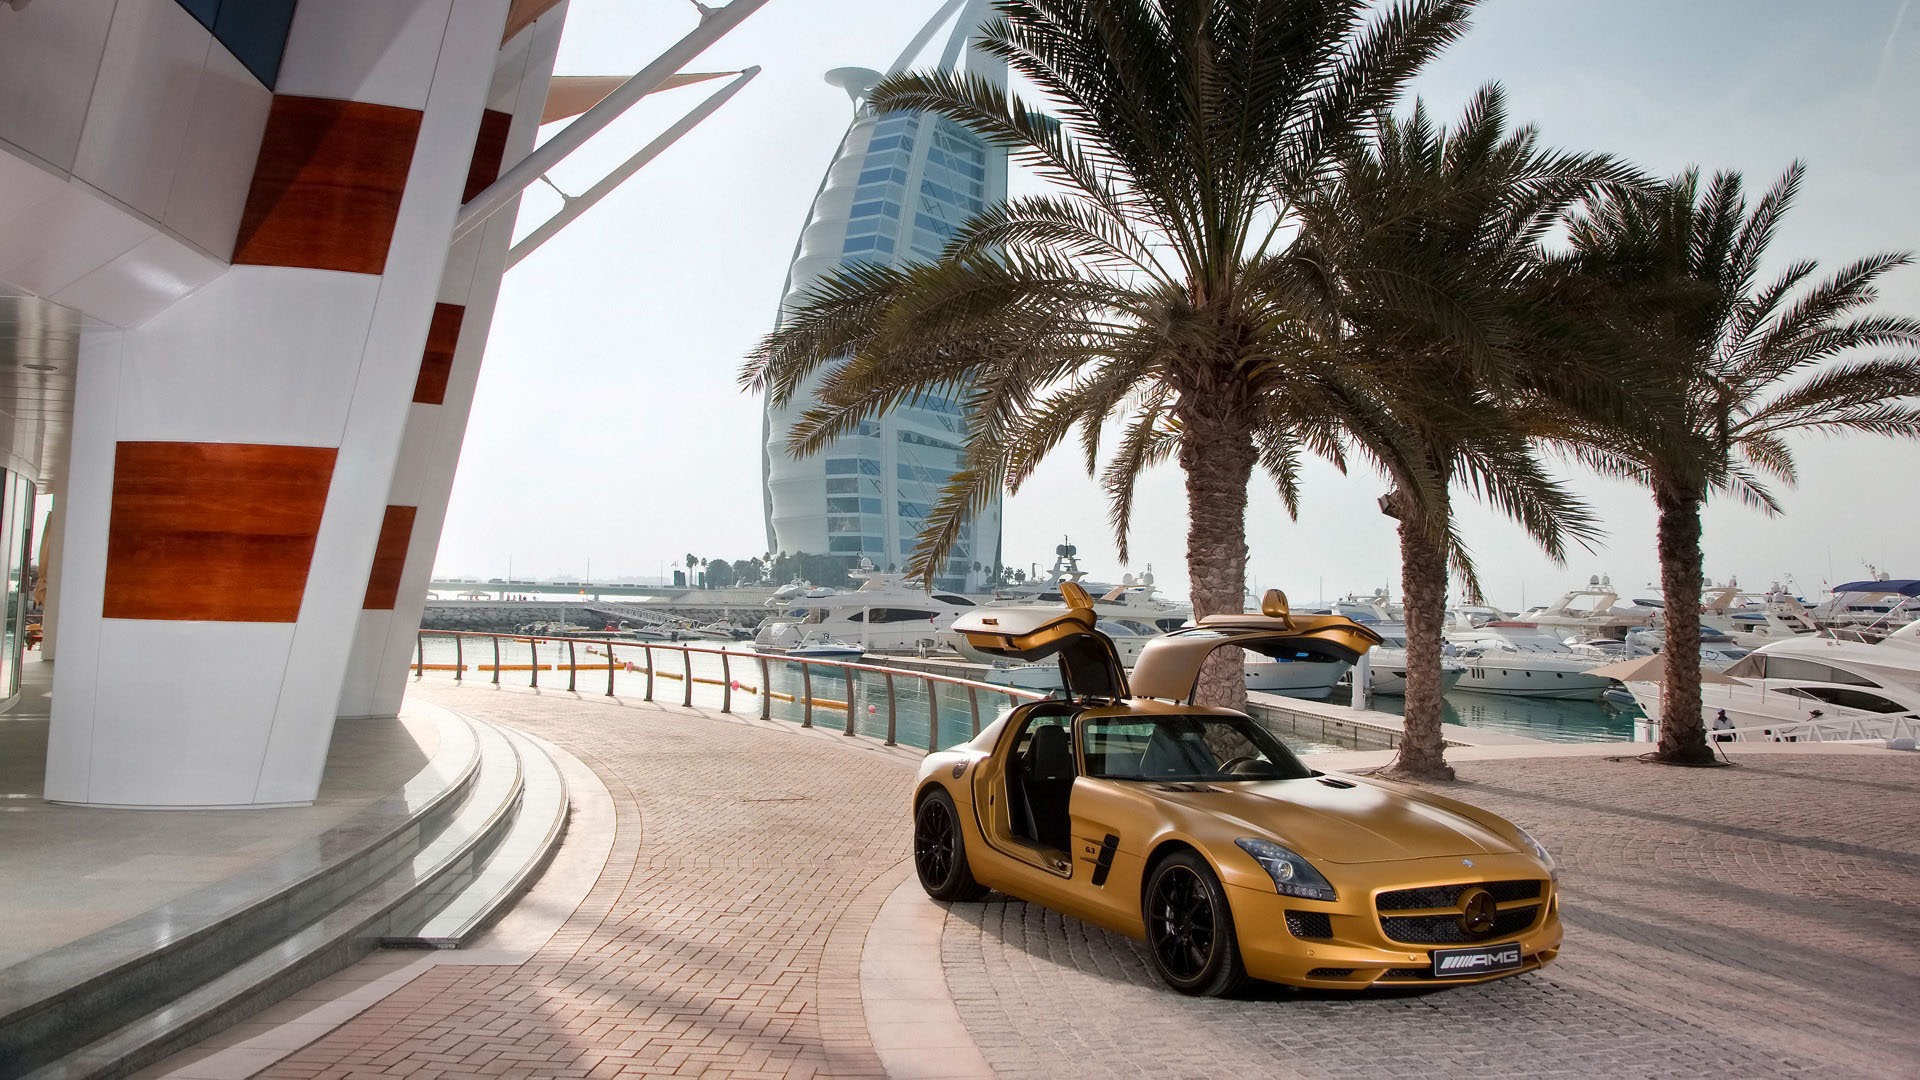 Dubai - thiên đường của những tòa nhà cao tầng, bãi biển đẹp nhất và sự xa hoa đích thực. Cùng ghé thăm thủ đô của Các tiểu vương quốc Ả Rập thống nhất và cảm nhận sự lộng lẫy của nó thông qua hình ảnh du lịch Dubai. 